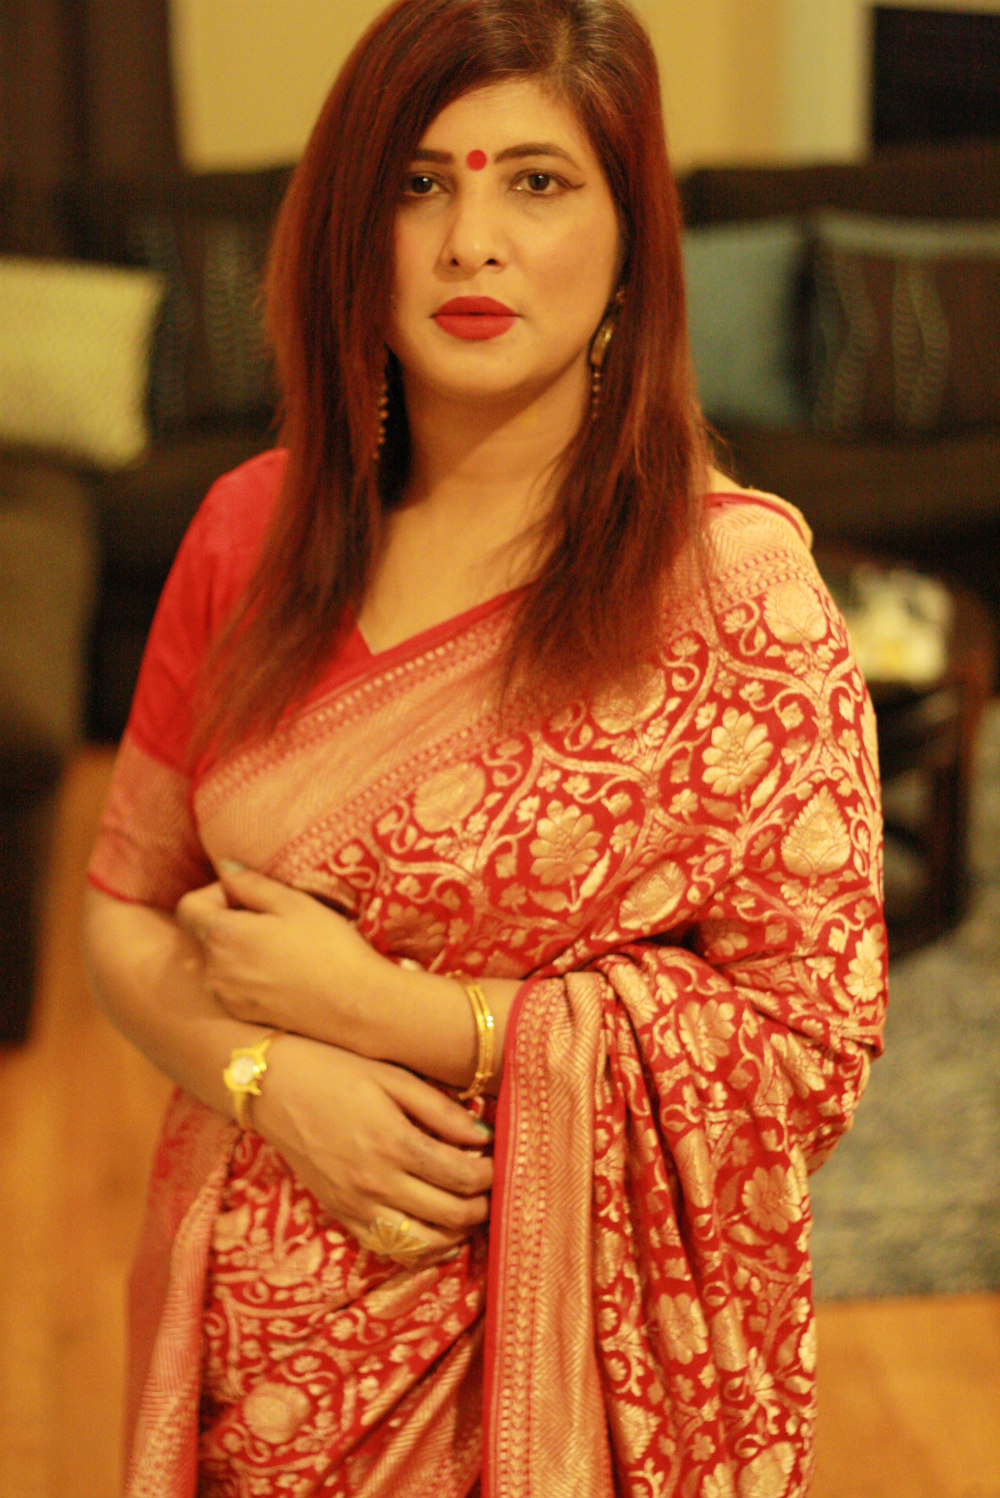 Charmi in Red Banaras Saree | Fashionworldhub